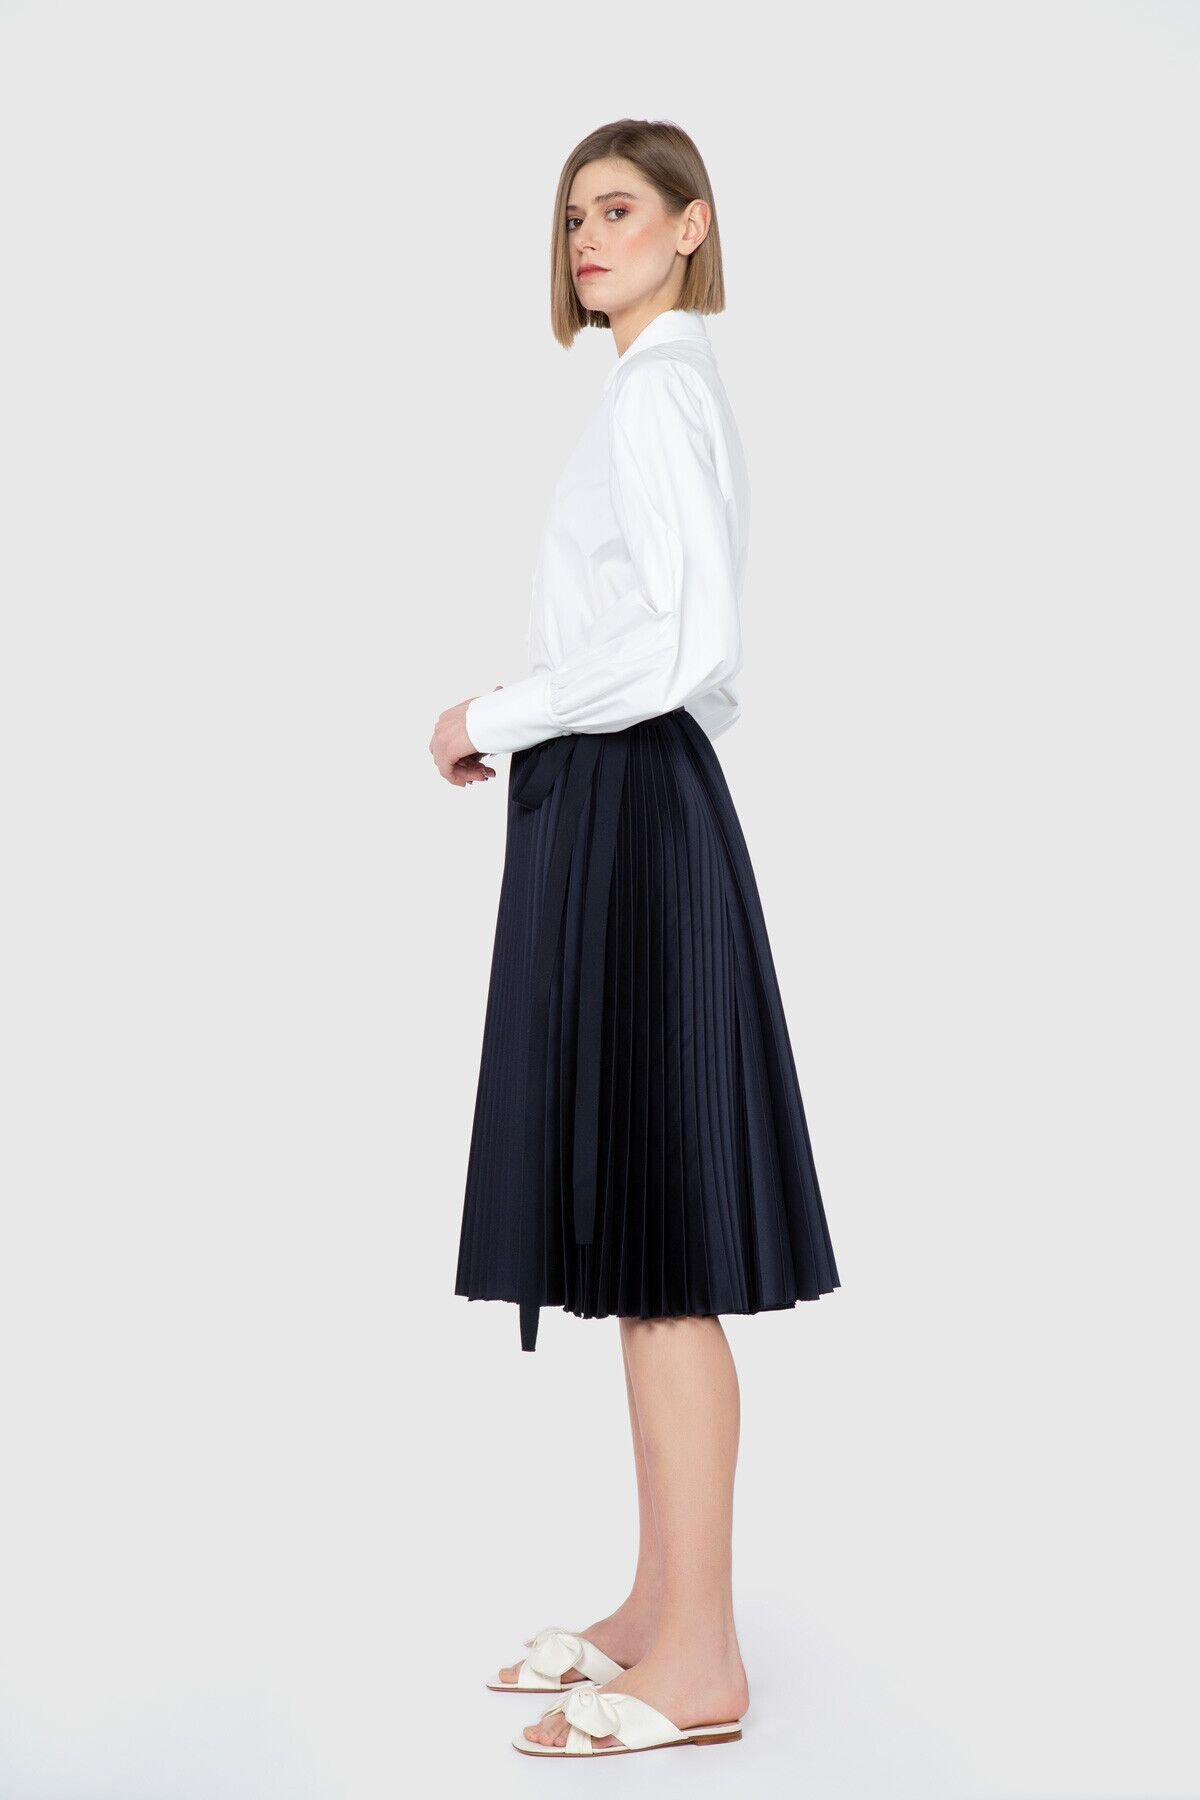 Pleat Knee Length Navy Blue Skirt